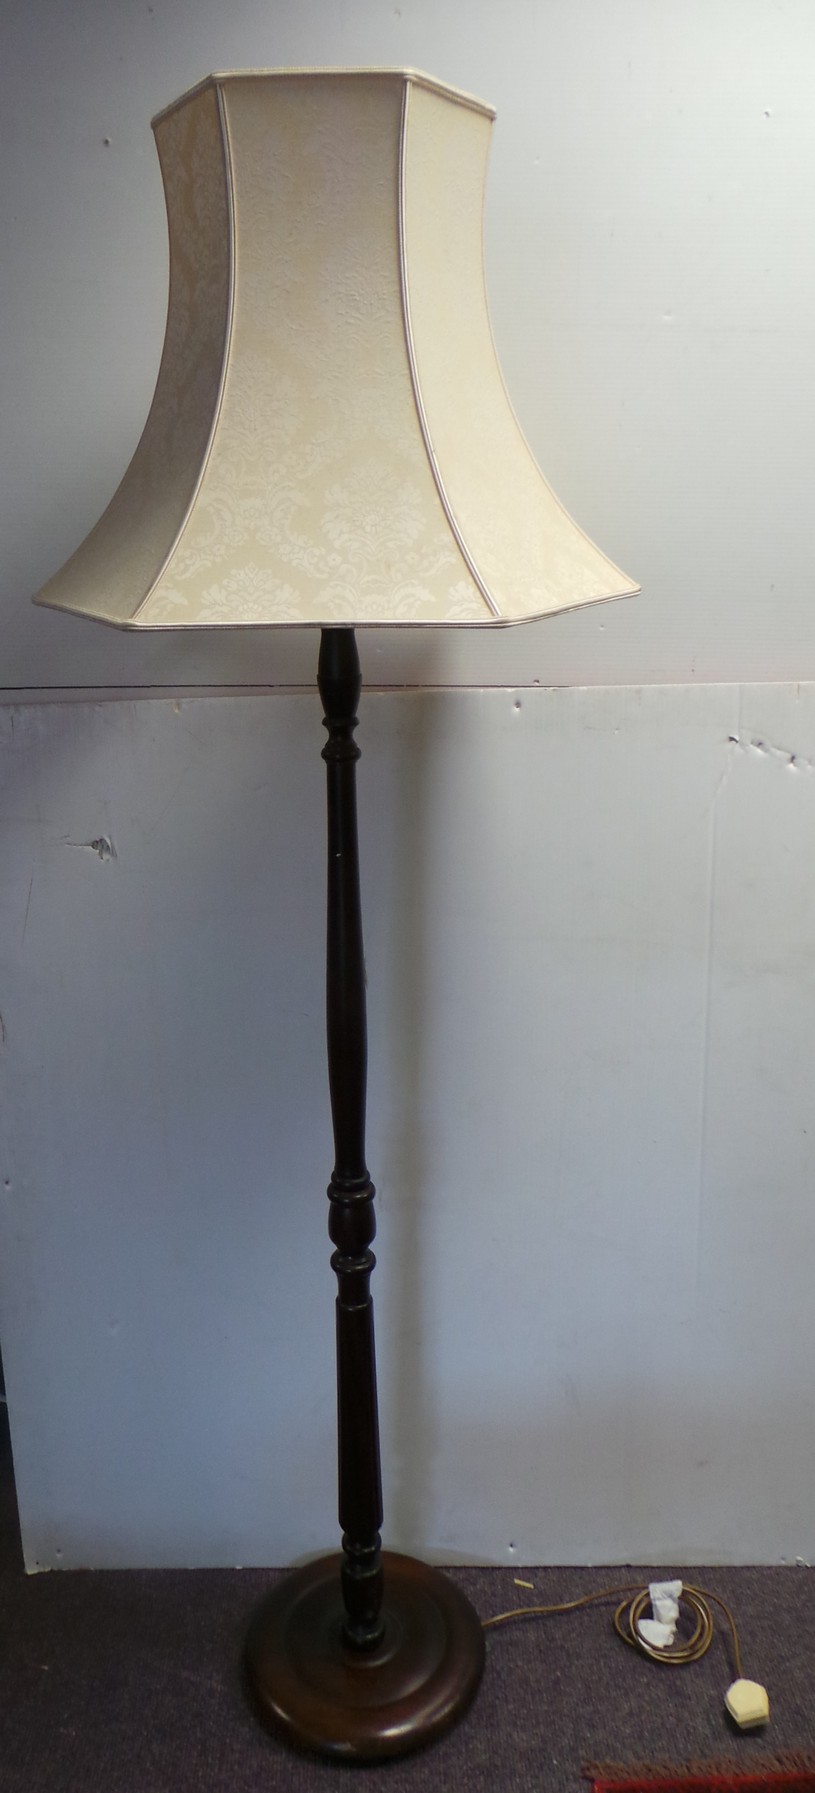 Mahogany Standard Lamp and Shade